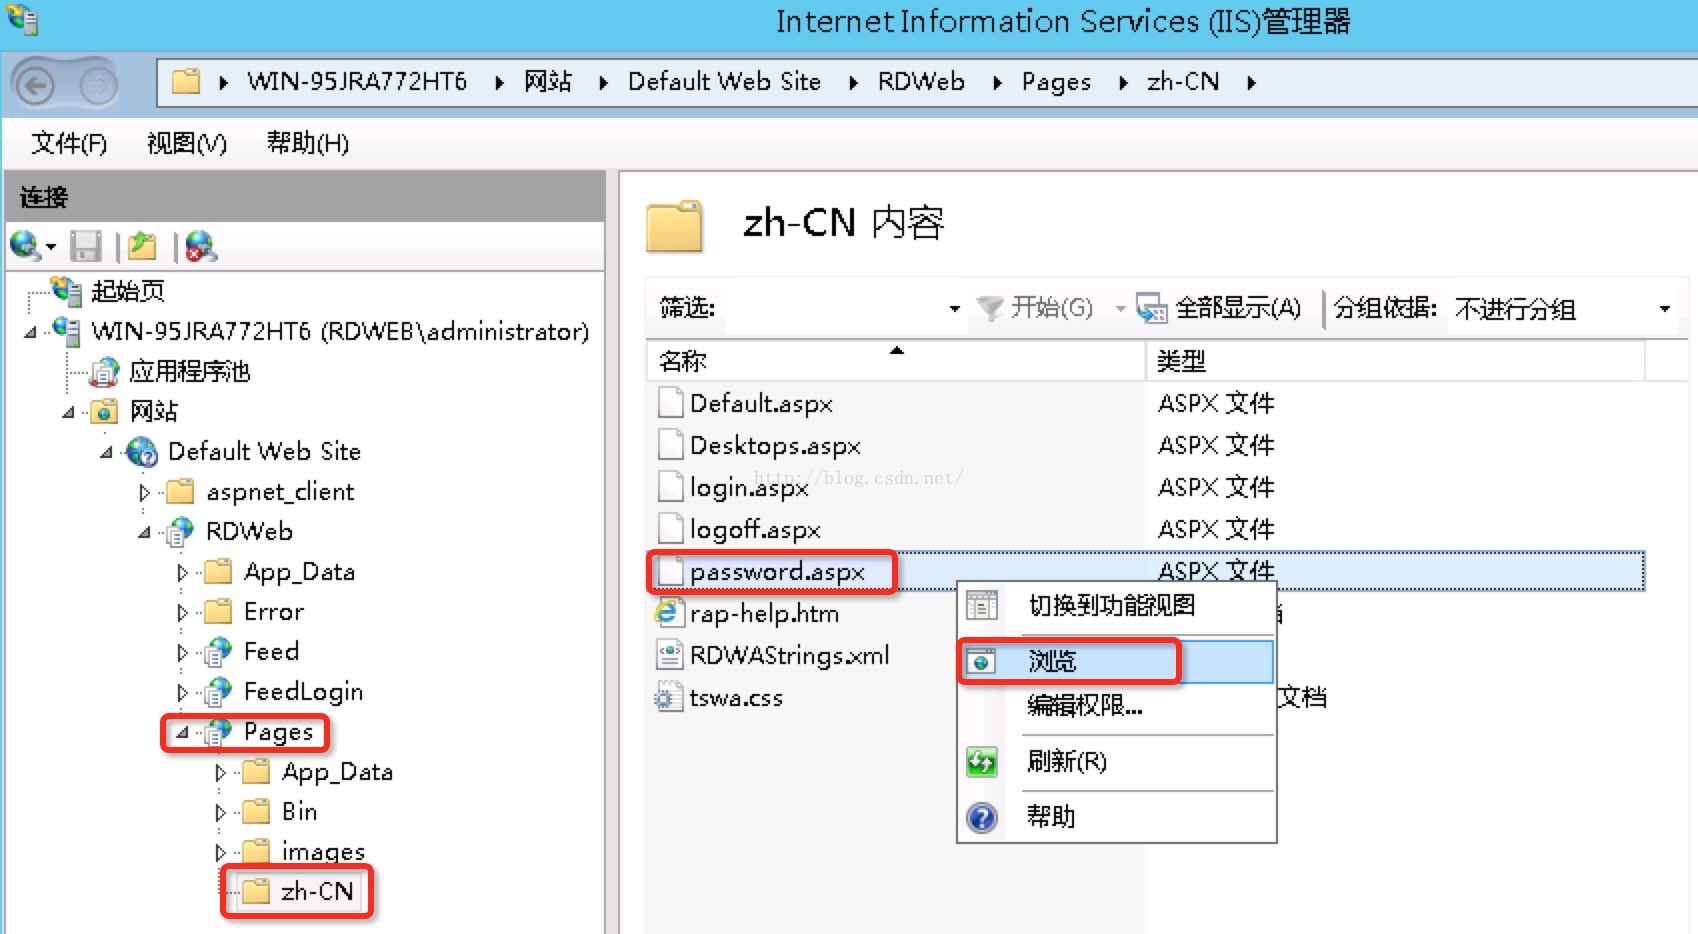 定位到应用程序“Pages”下的“zh-CN”目录下，右击“password.aspx”文件，选择“浏览”